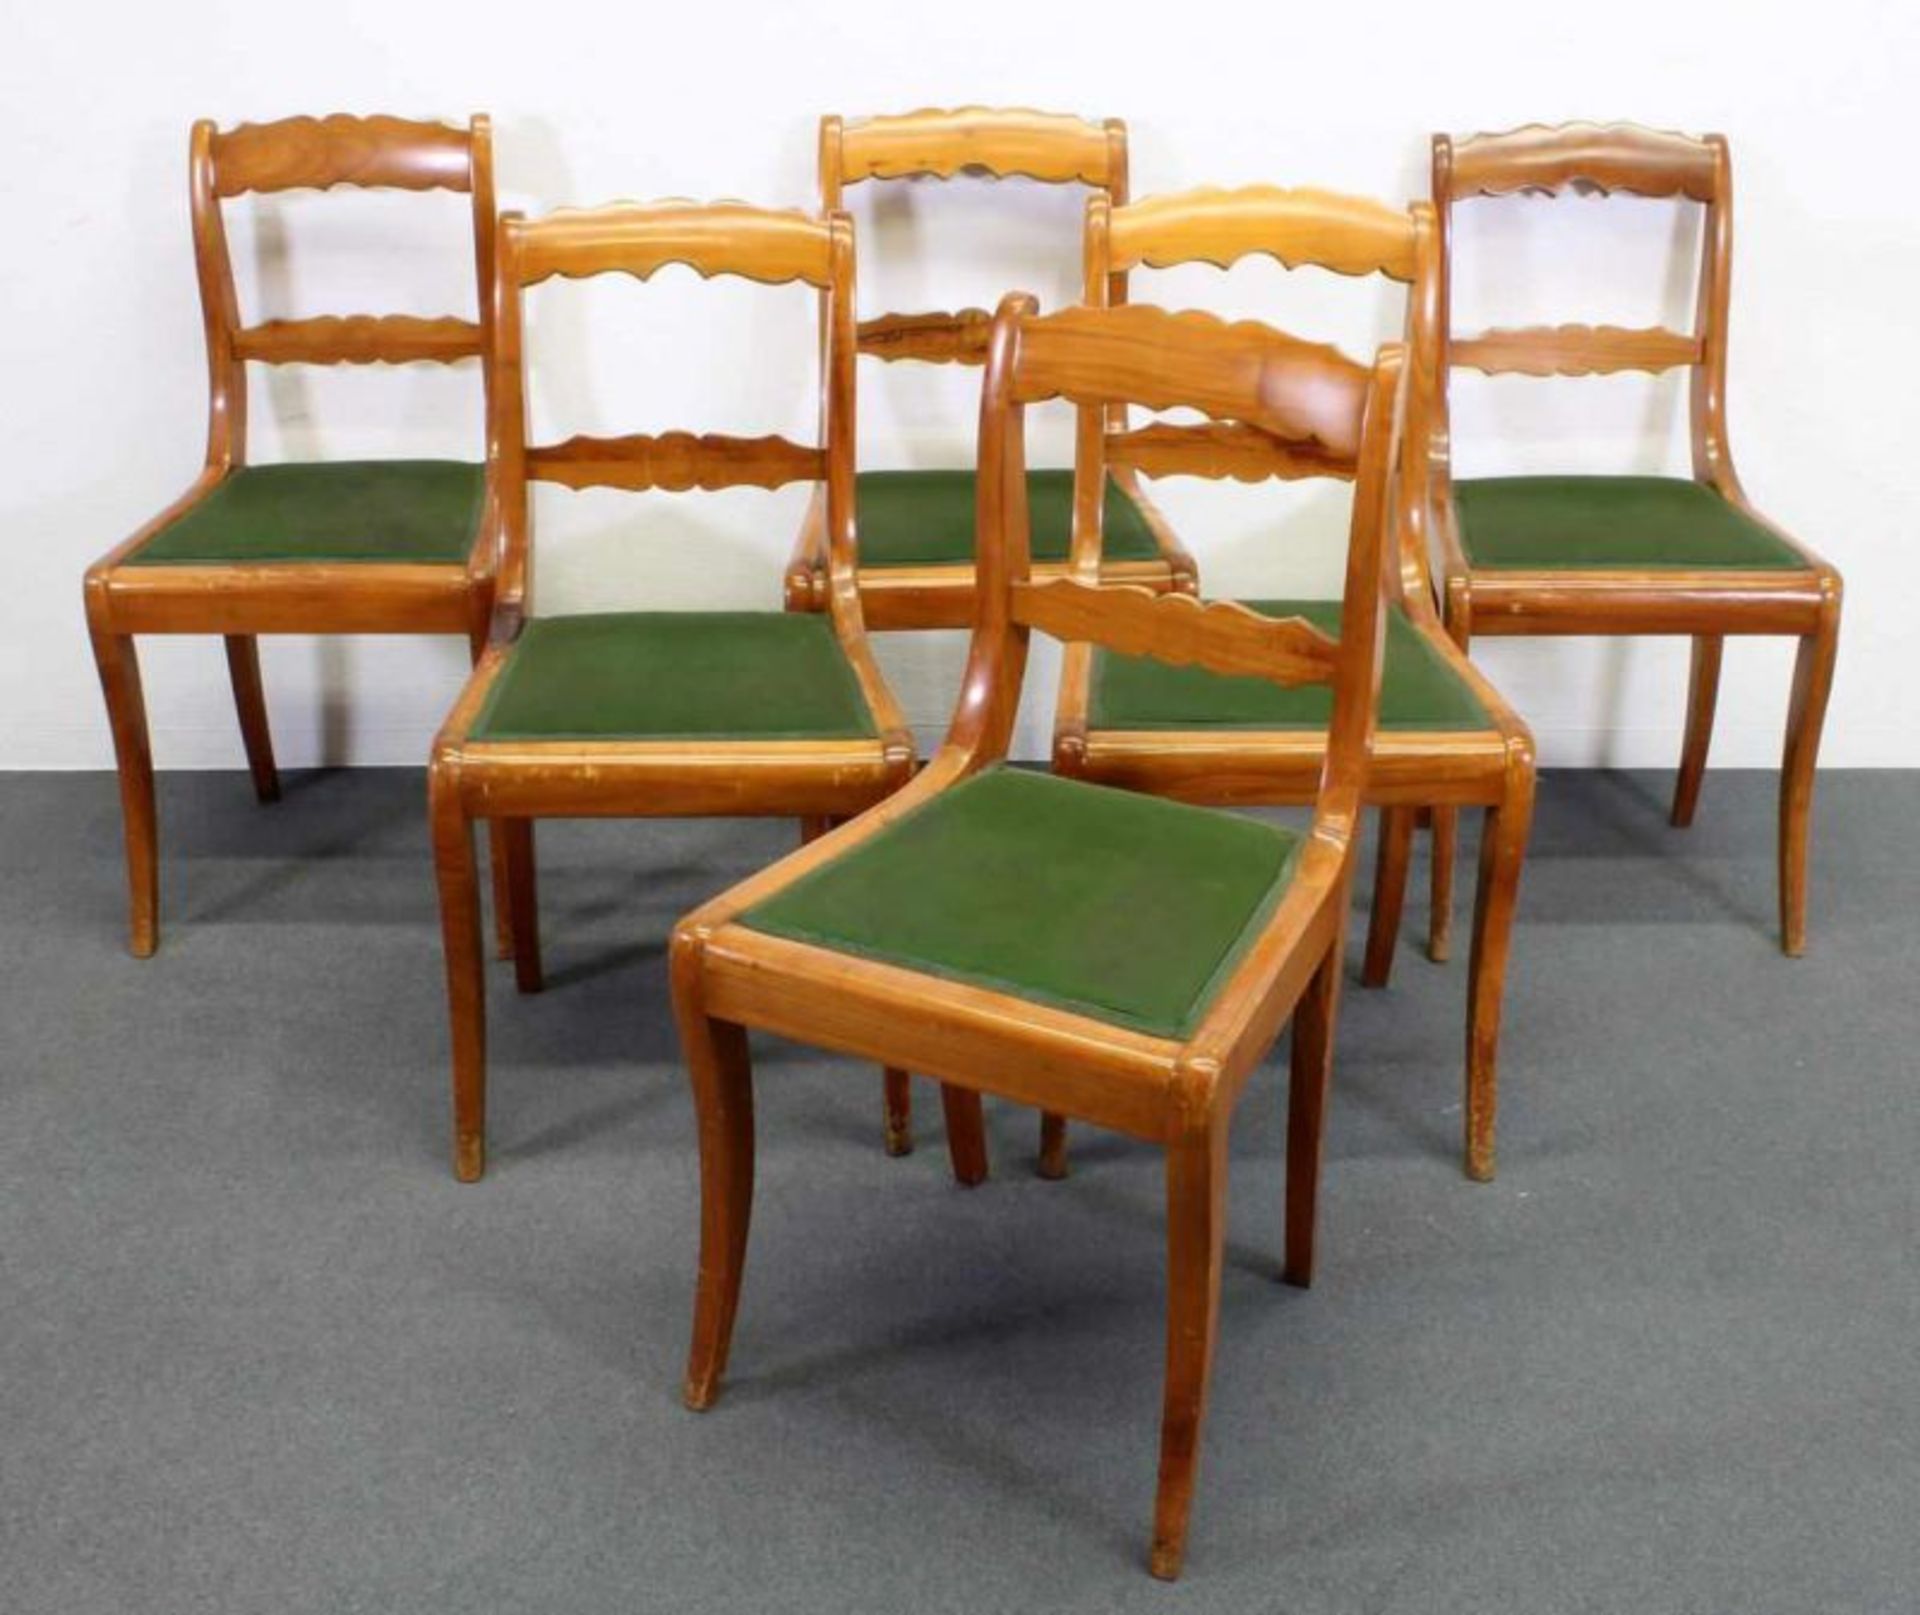 6 Stühle, um 1840, Kirschholz, Sitzpolster, teils fleckig, Gebrauchsspuren 20.00 % buyer's premium